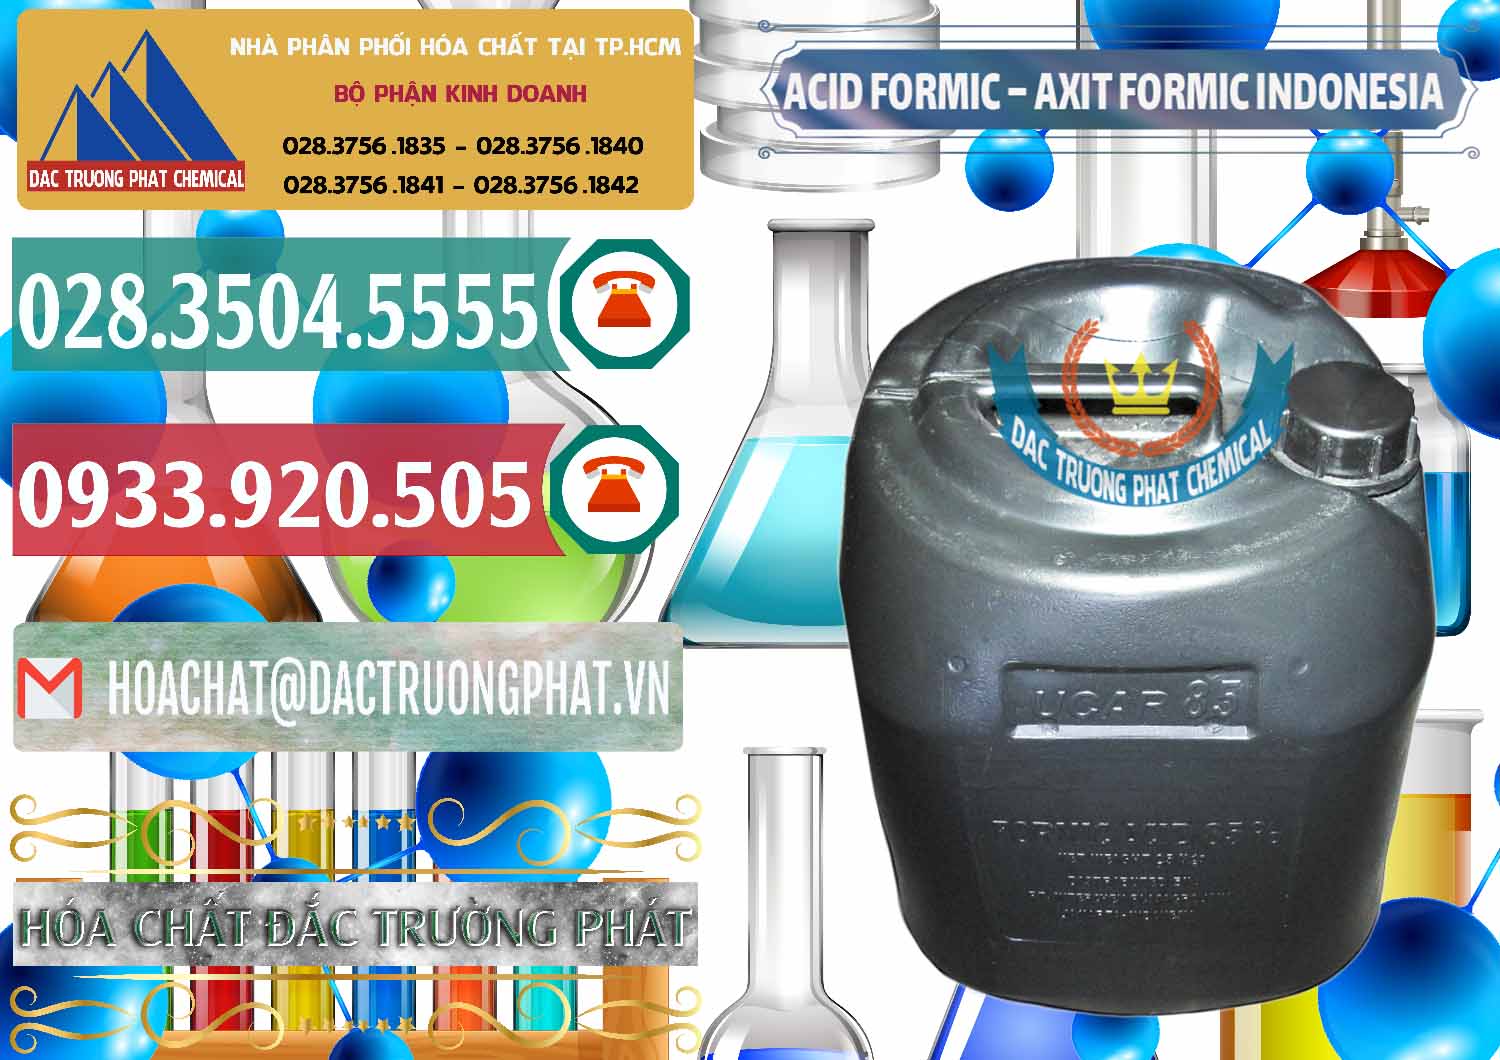 Công ty chuyên bán _ phân phối Acid Formic - Axit Formic Indonesia - 0026 - Cty kinh doanh và phân phối hóa chất tại TP.HCM - muabanhoachat.vn